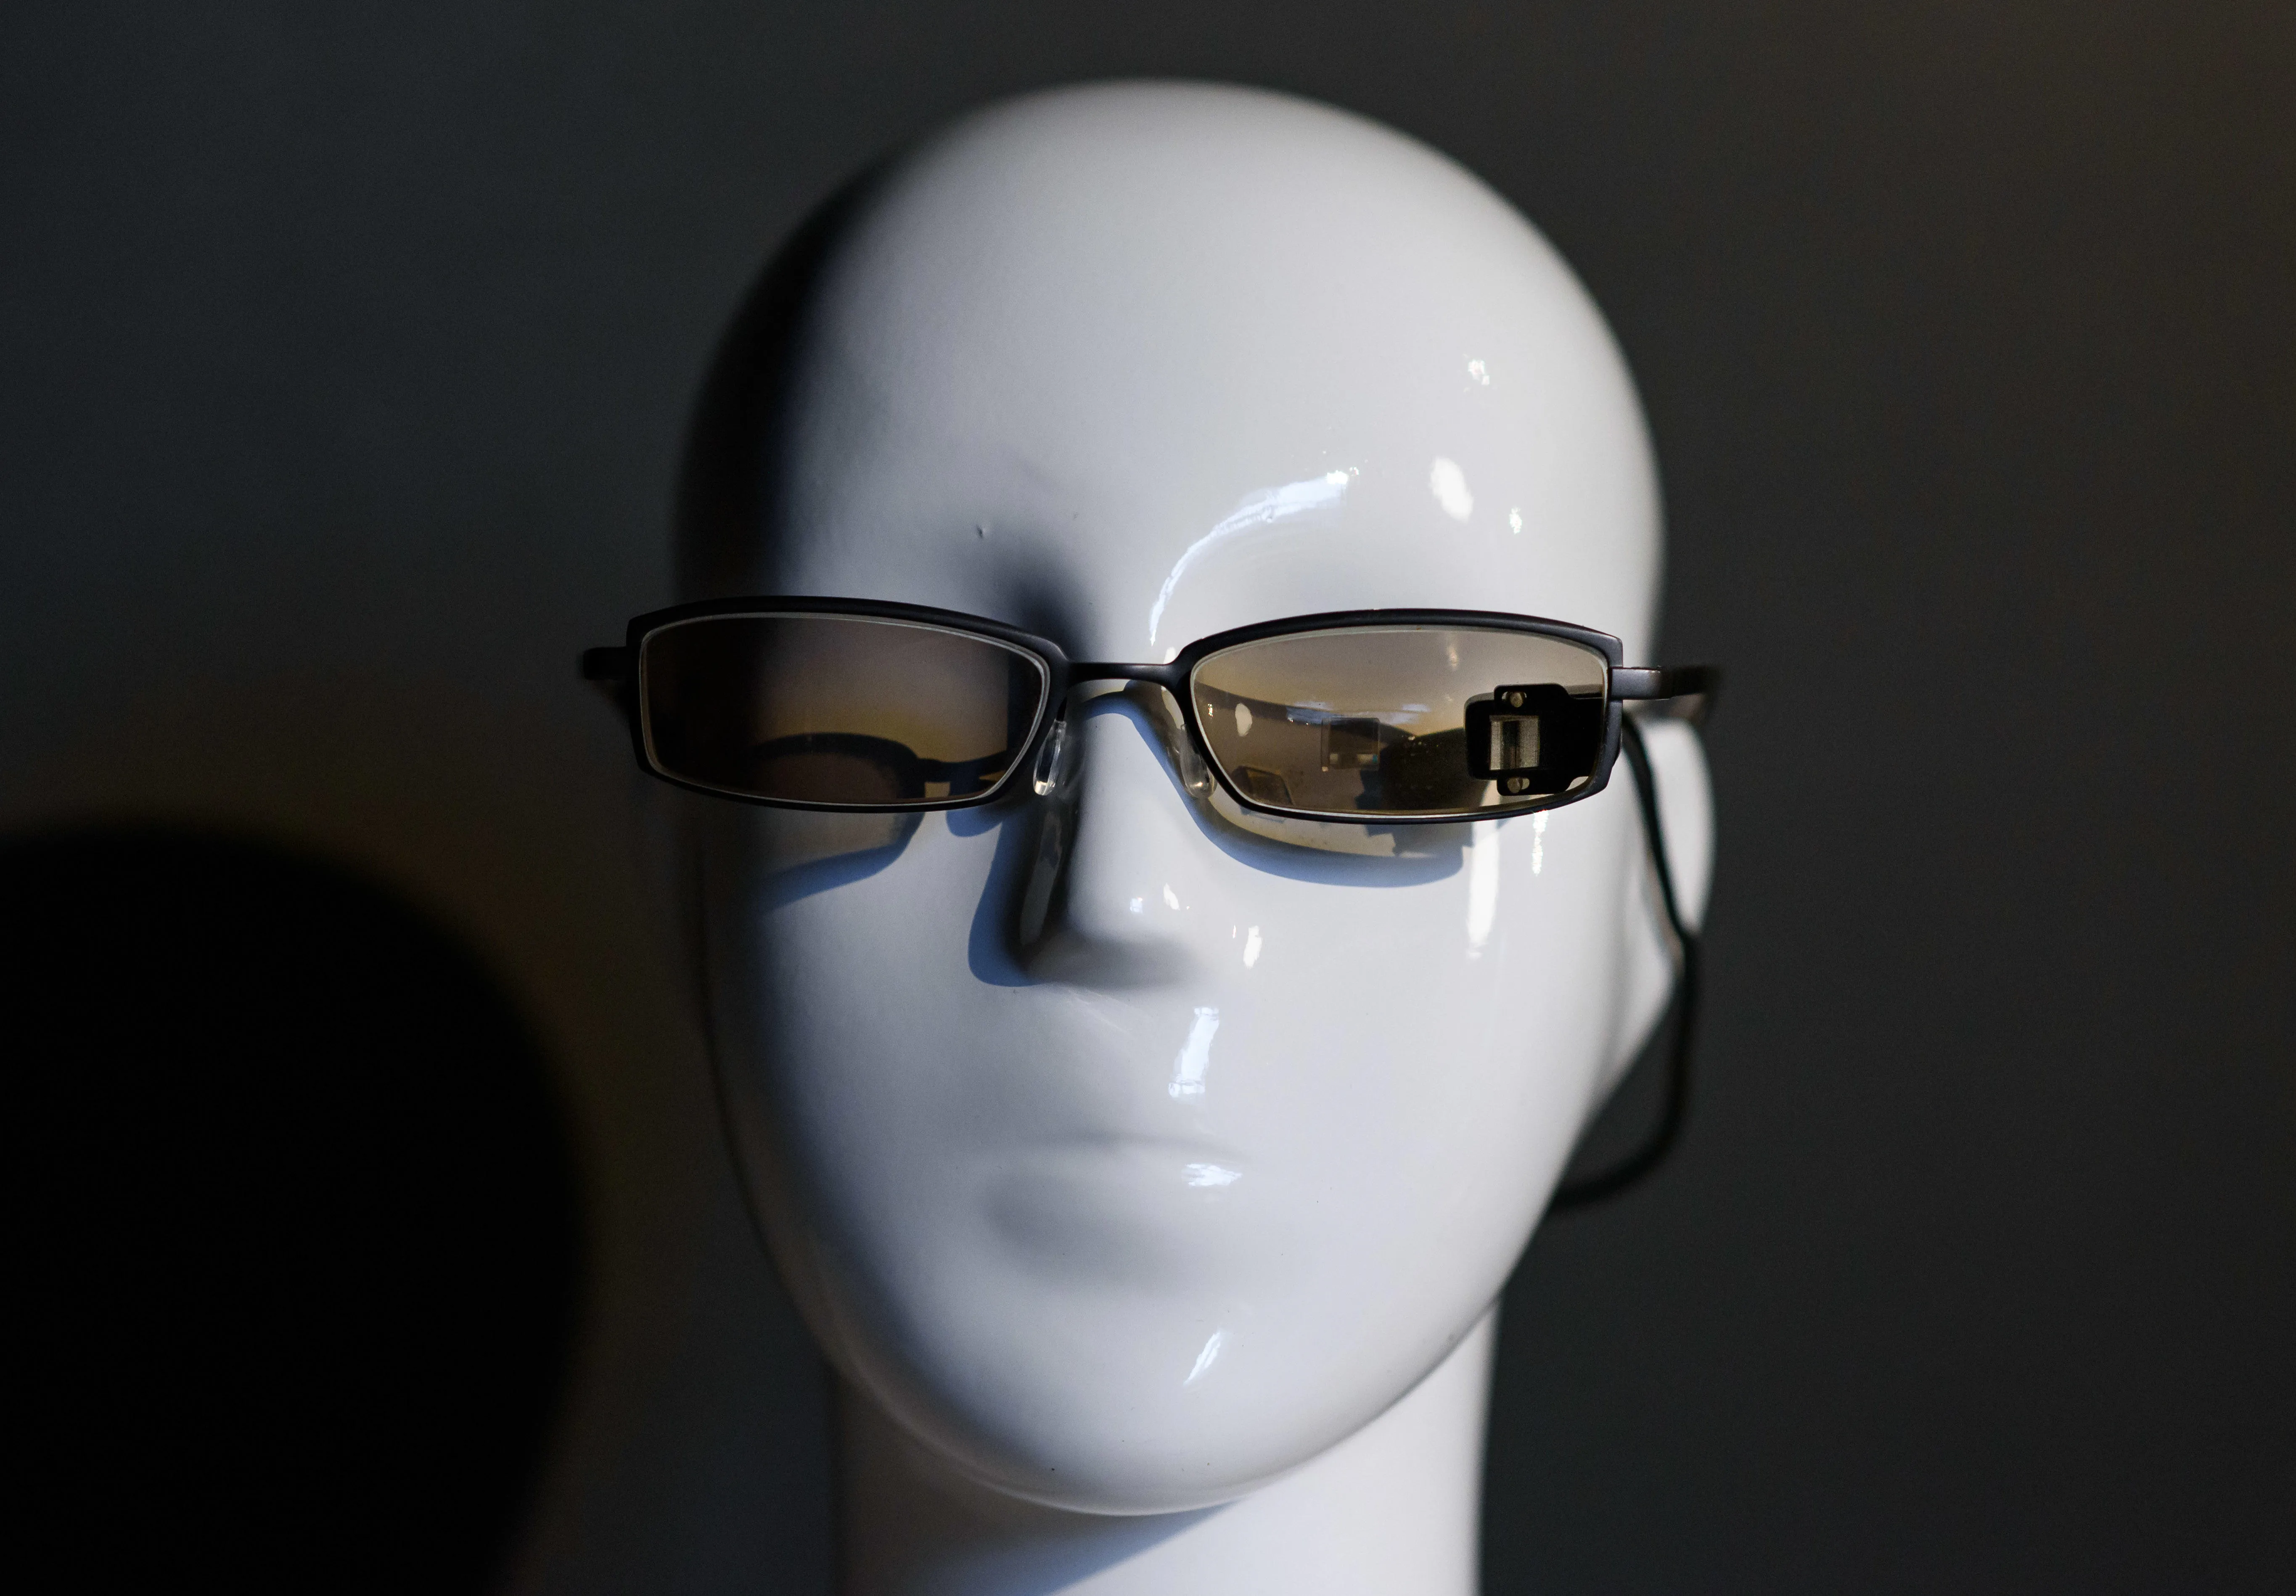 MyoPhone Augmented Reality eyewear prototype. Photo by Richard Eaton.